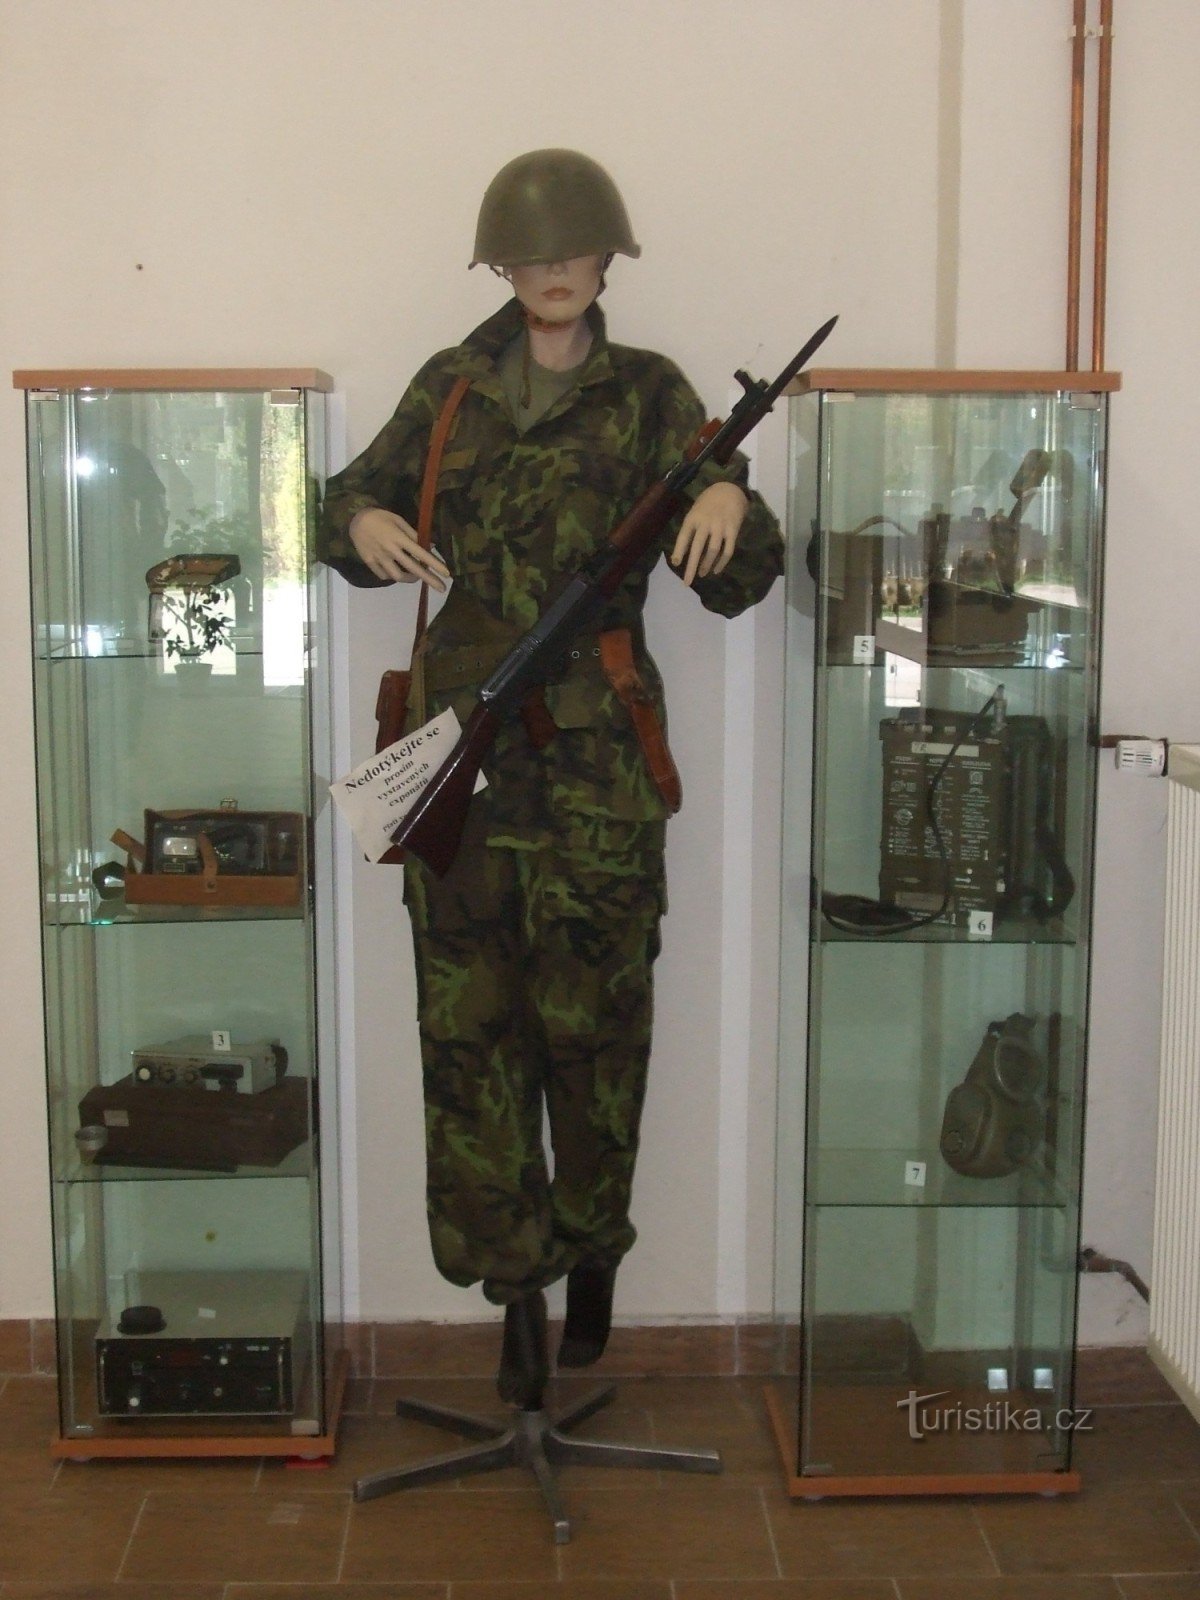 Ausstellung von militärischer Ausrüstung